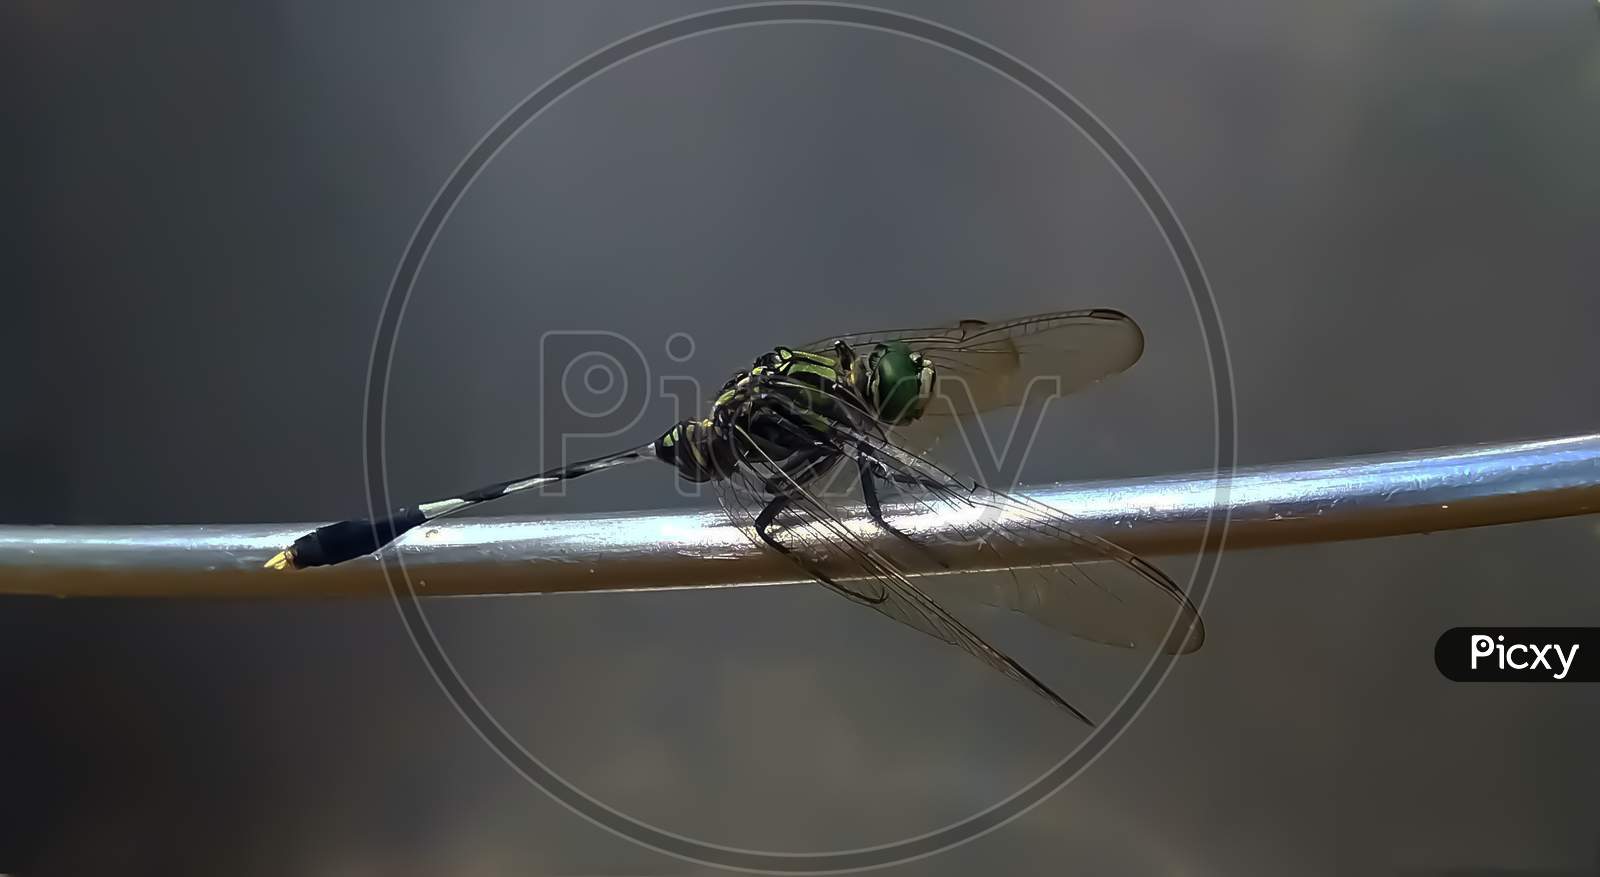 Greenish shaded dragonfly